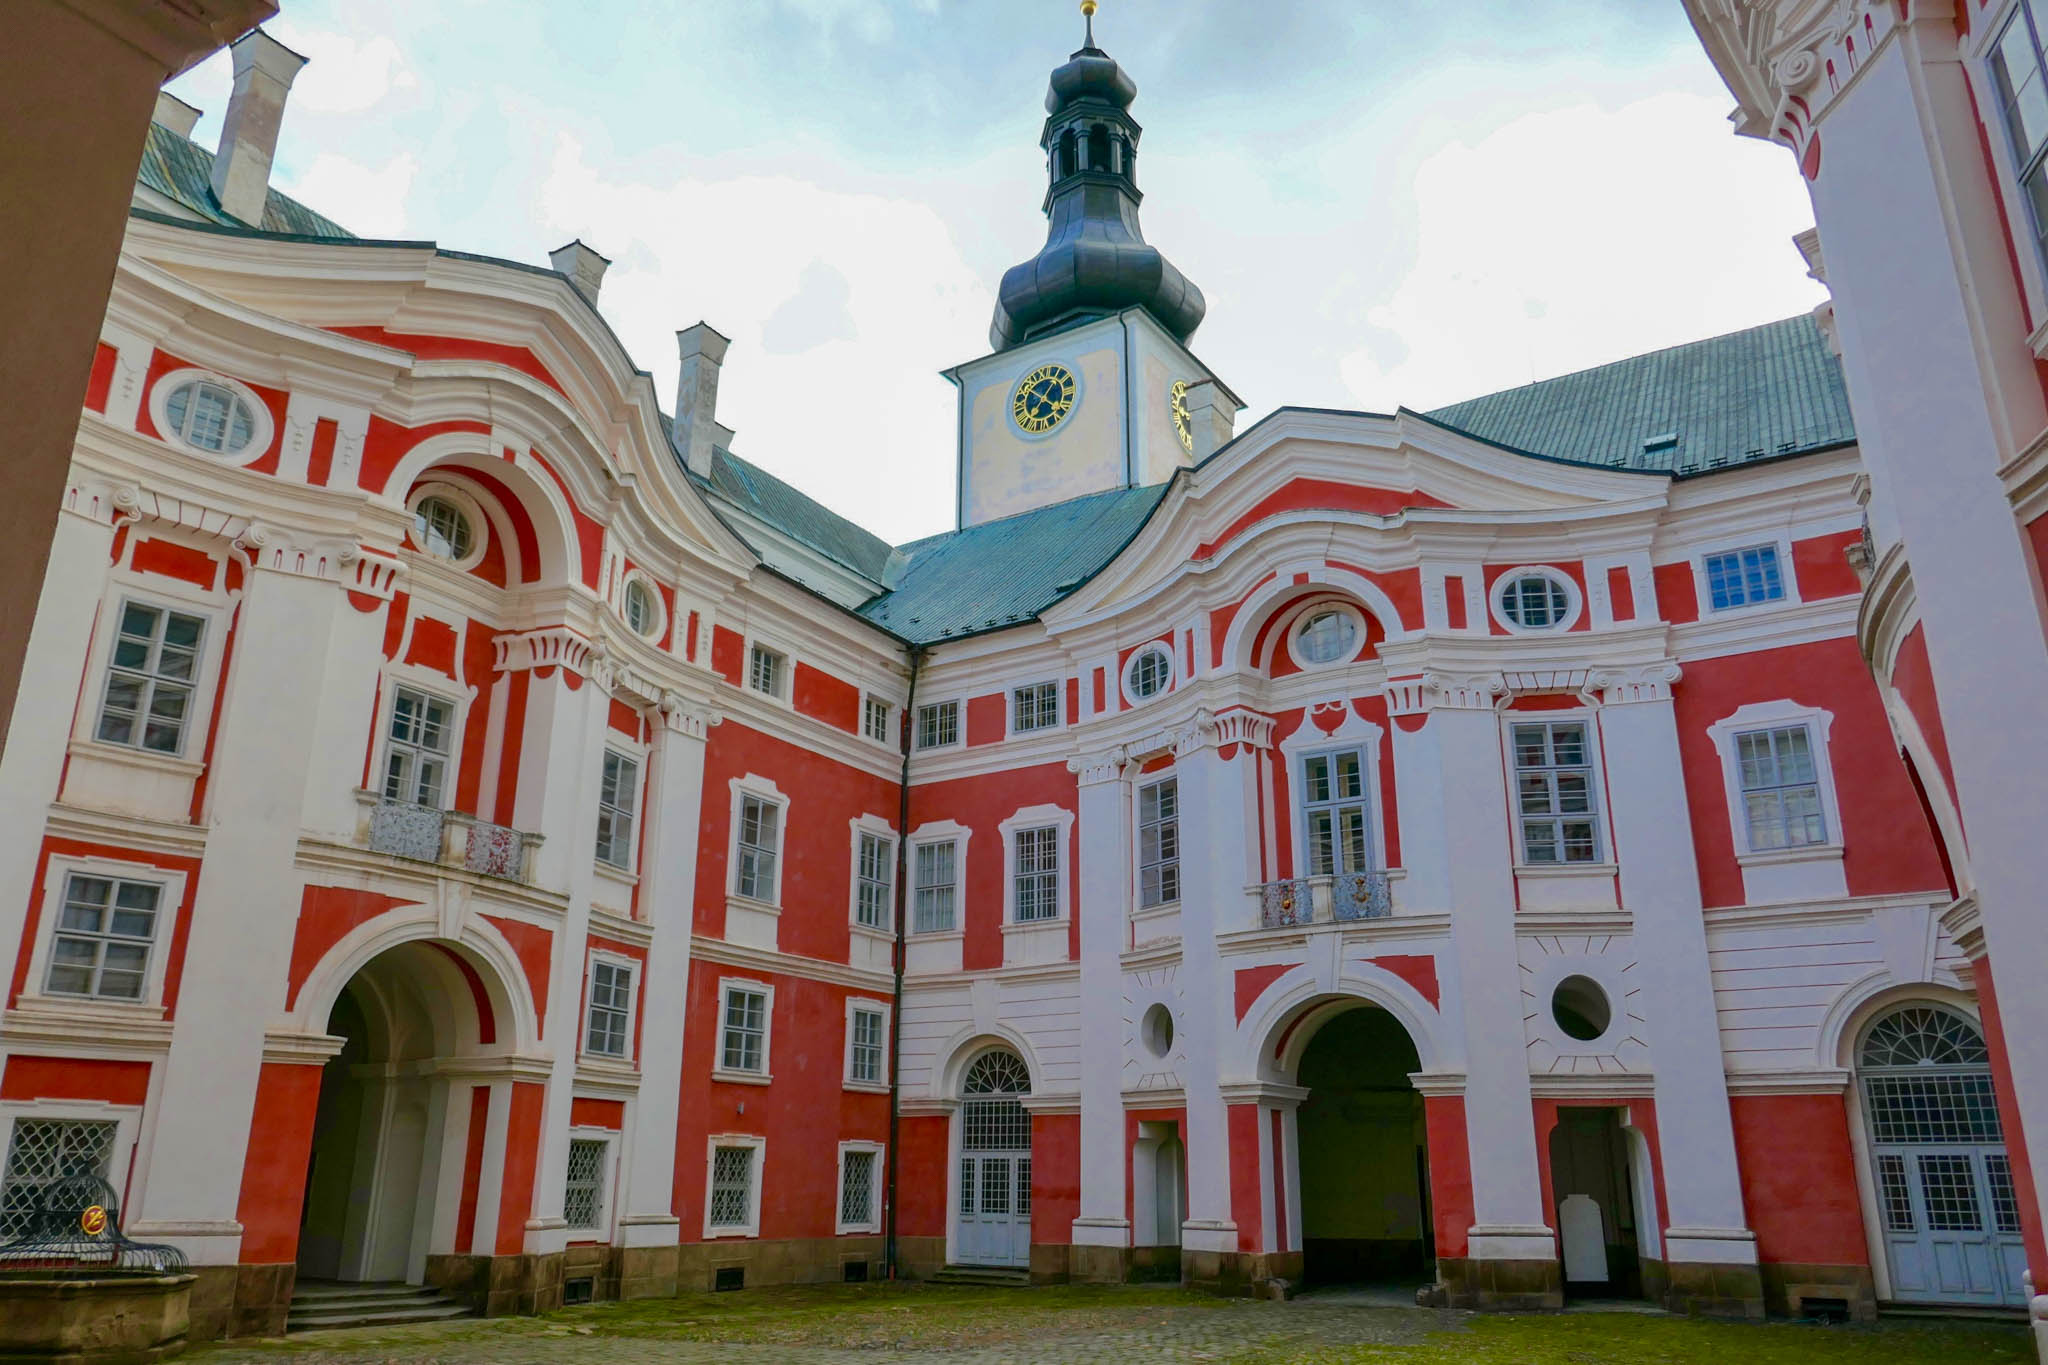 7-tsjechie-broumov-klooster-wit-met-roze.jpg